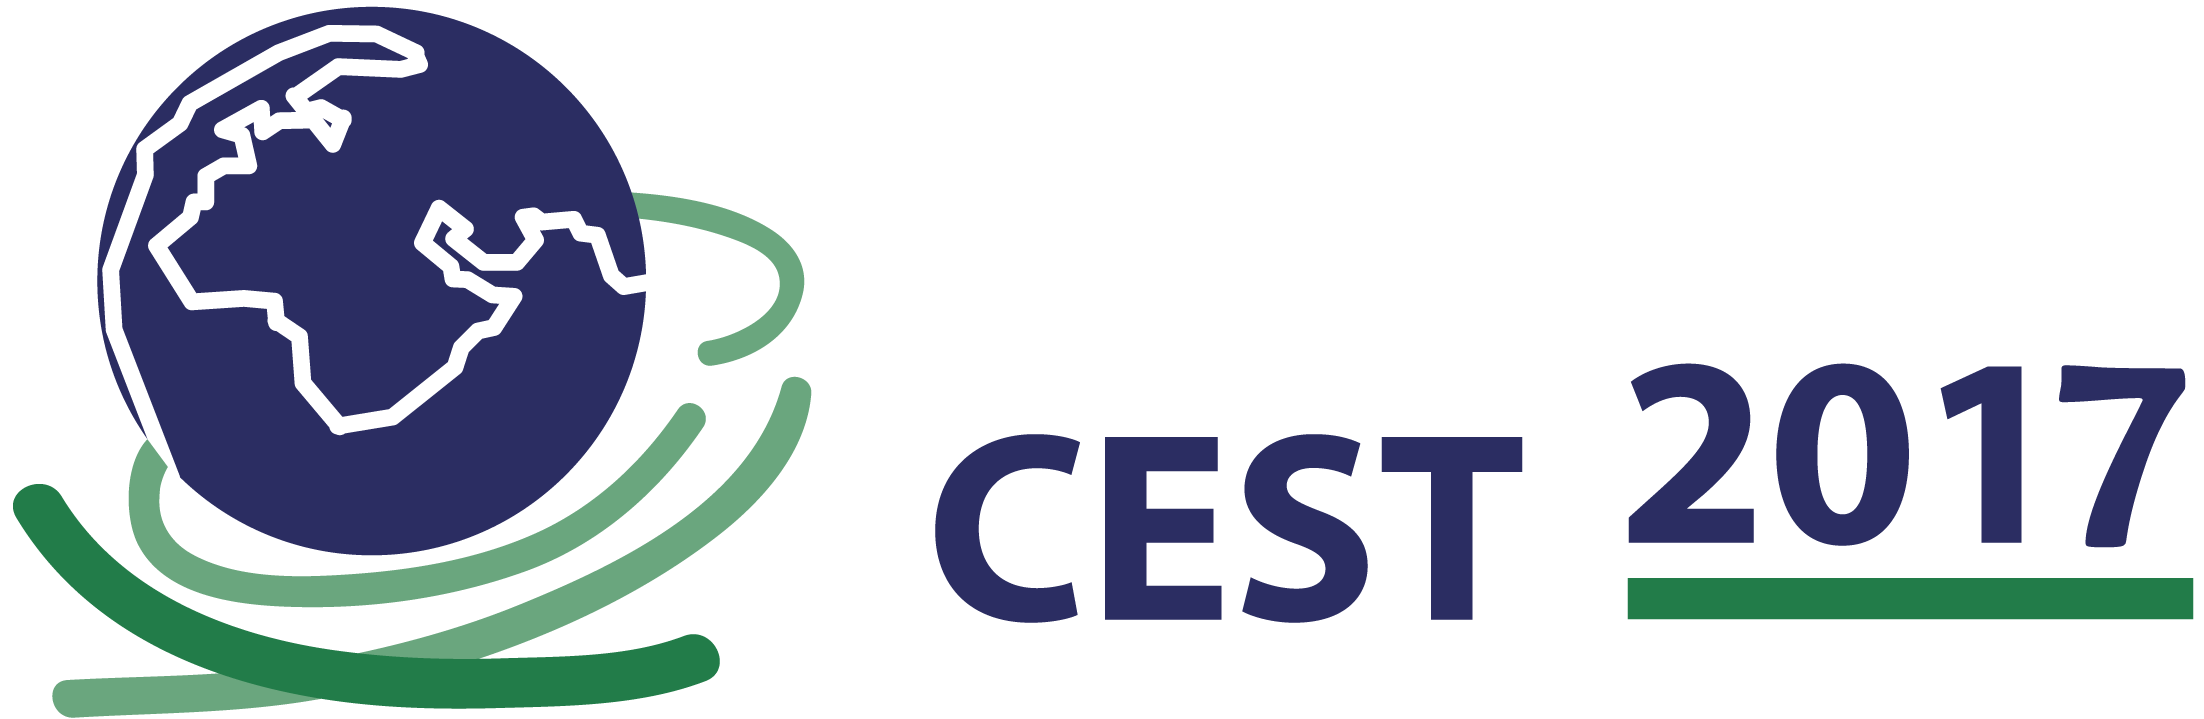 c:\users\klont\dropbox\cest2017\logos\cest2017.png